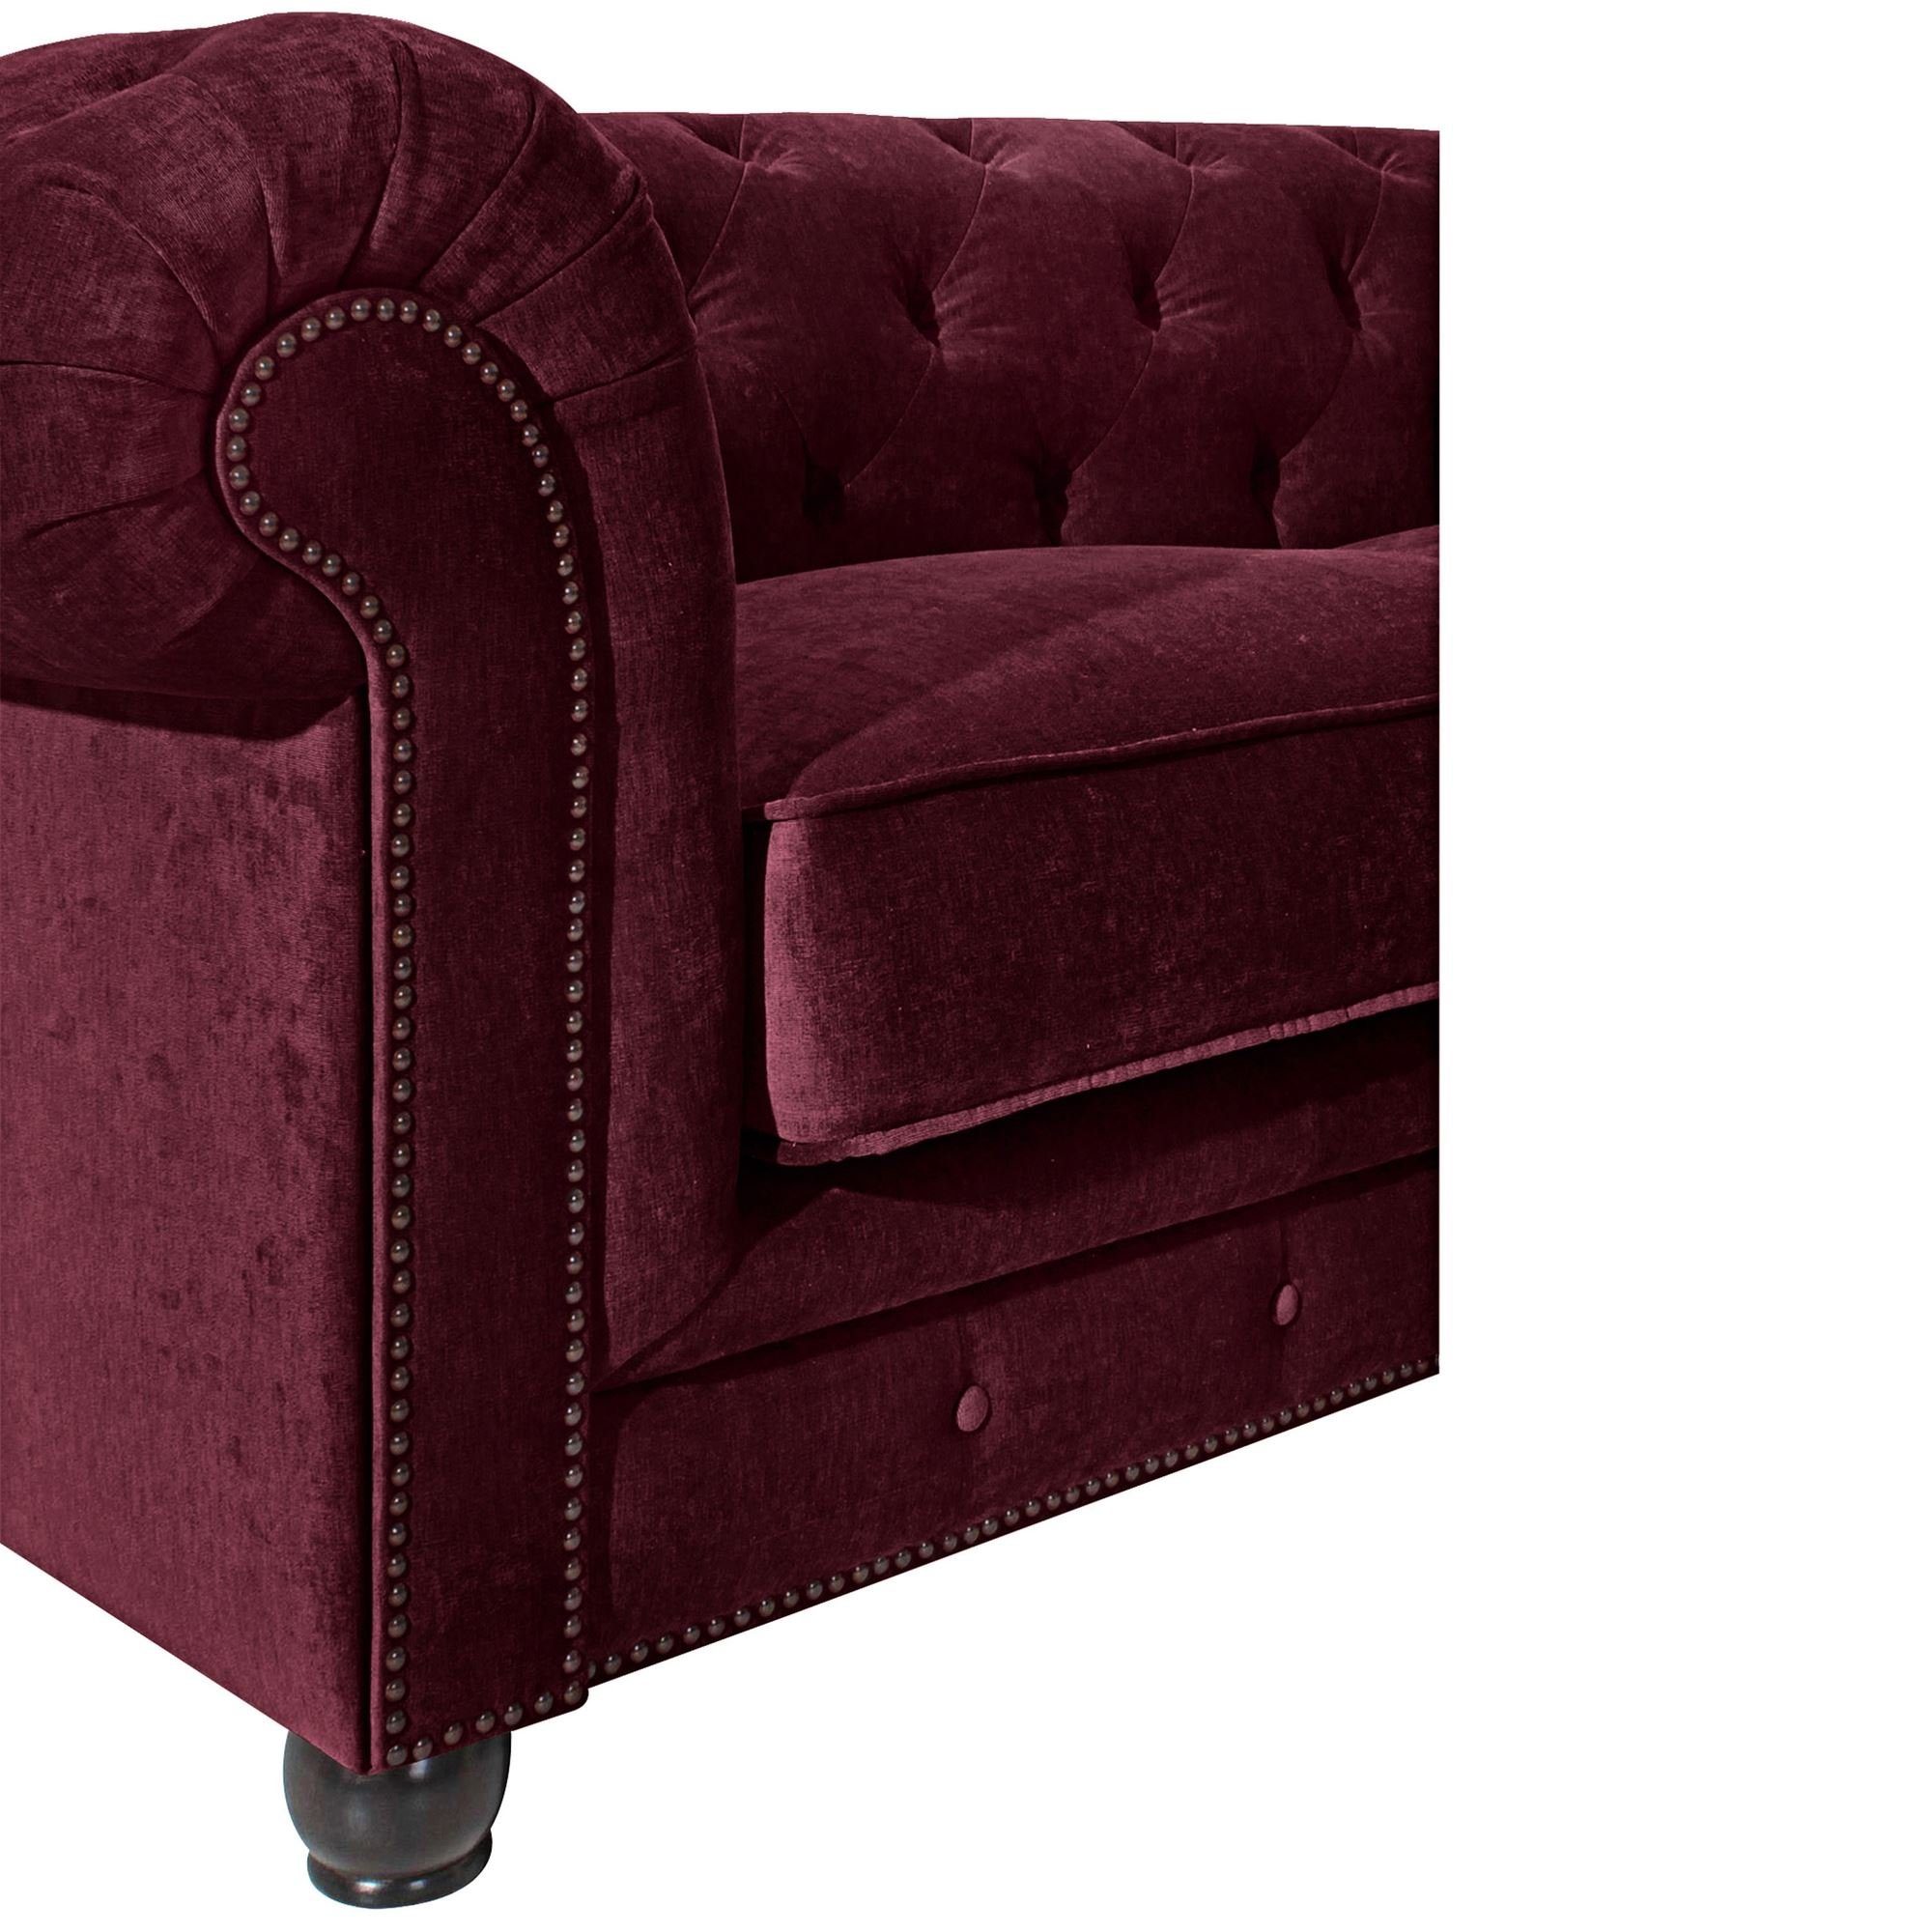 Teile, Versand Kessel Microfaser Sofa Sofa Bezug 58 Sitz verarbeitet,bequemer aufm hochwertig Sparpreis inkl. 1 Kostenlosem 2-Sitzer Kathe nussbau, Buche